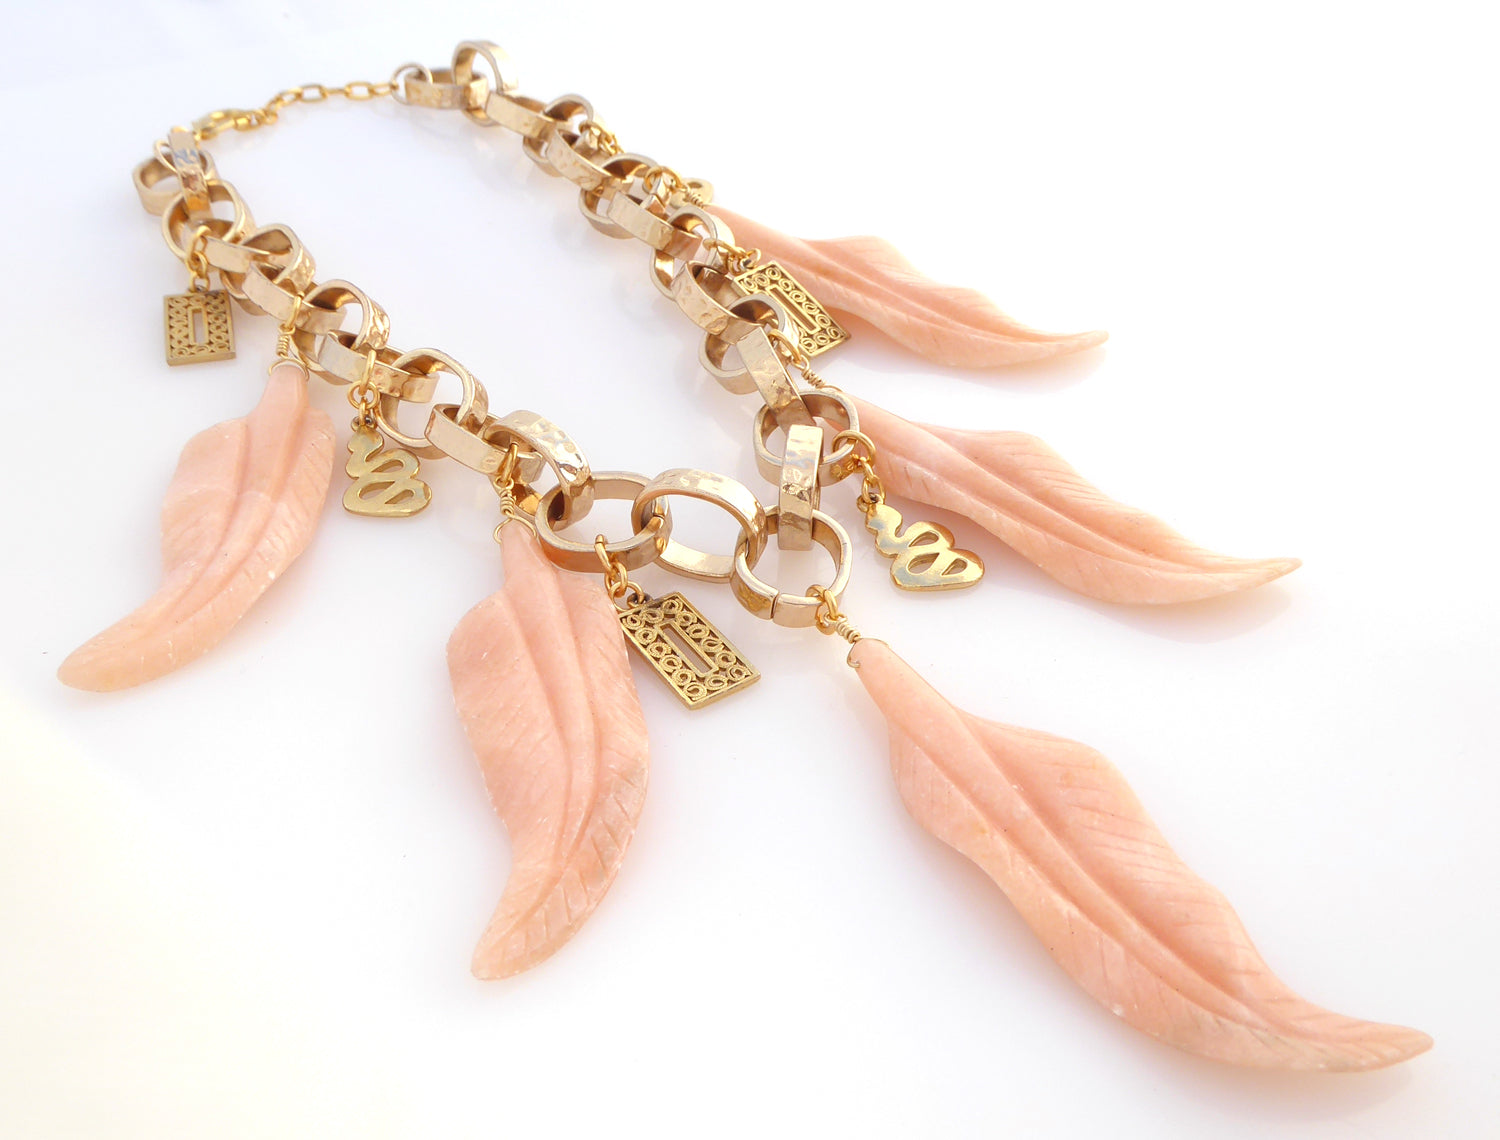 Peach aventurine feather necklace